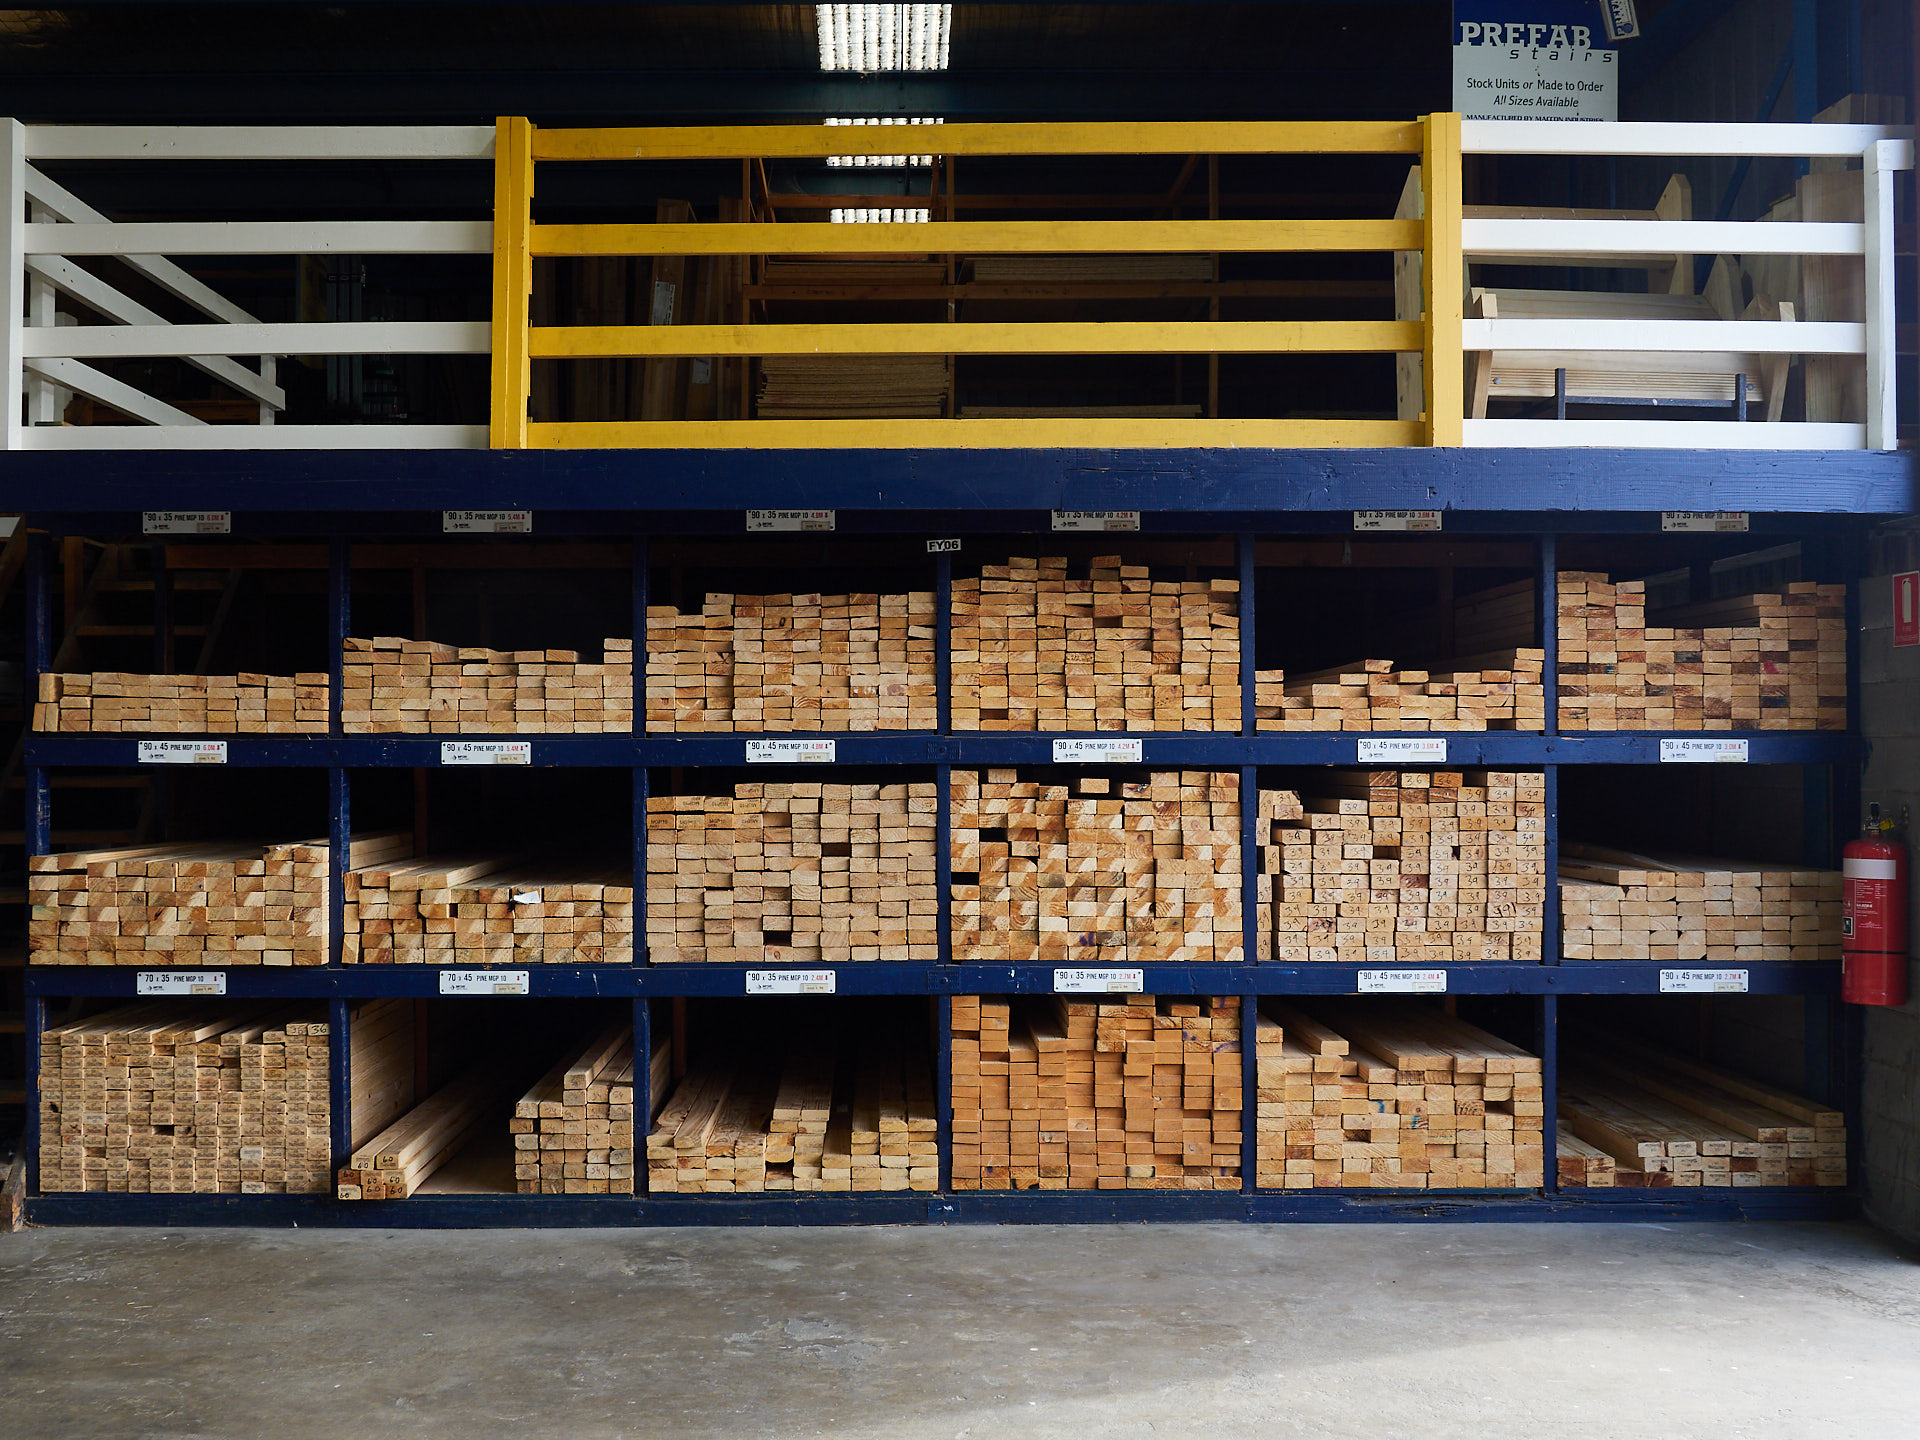 Bayside Timber & Truss-Carrum Downs-Timber-Hardware-Timber Sales